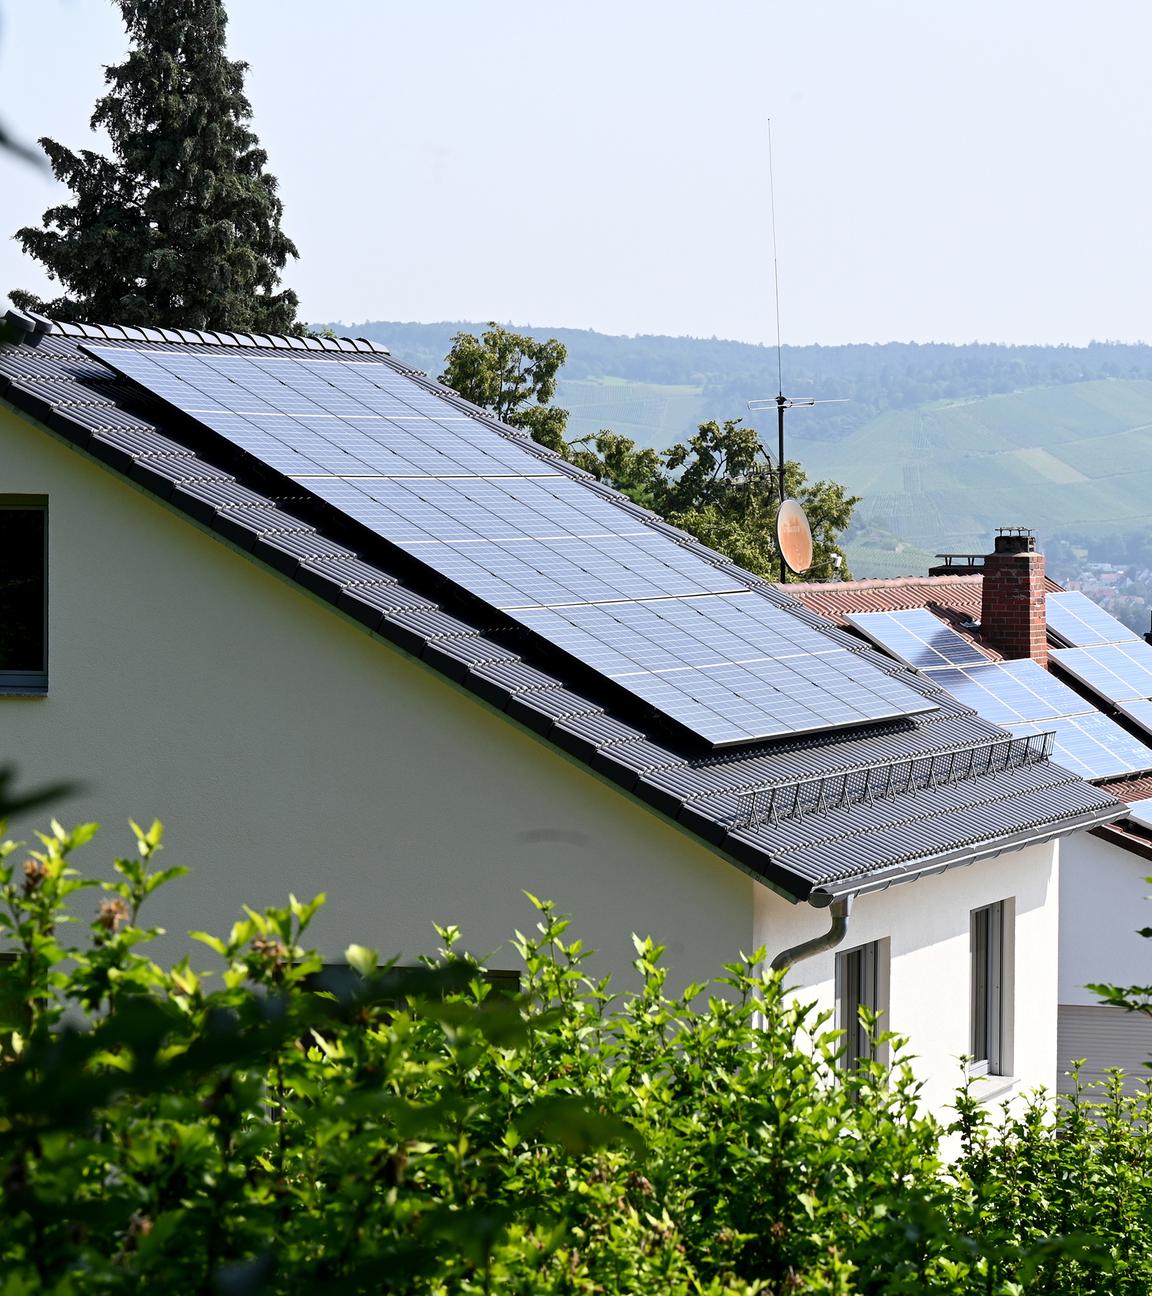 Solaranlagen auf den Dächern von Einfamilienhäusern in Baden-Württemberg